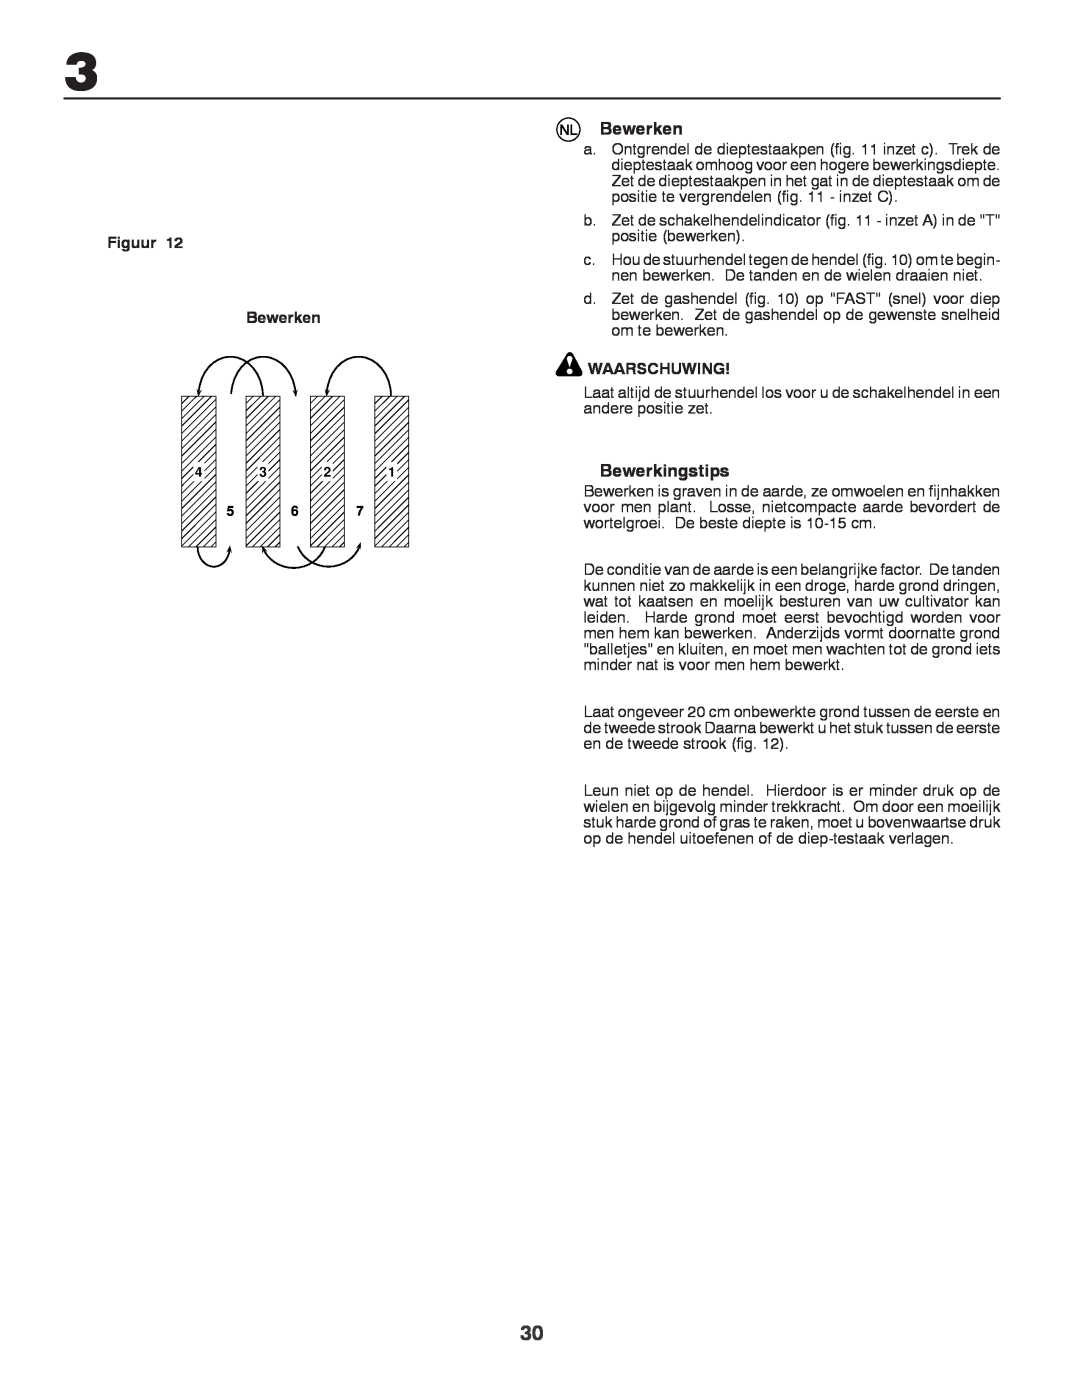 Husqvarna CRT81 instruction manual Bewerkingstips, Figuur Bewerken, Waarschuwing 